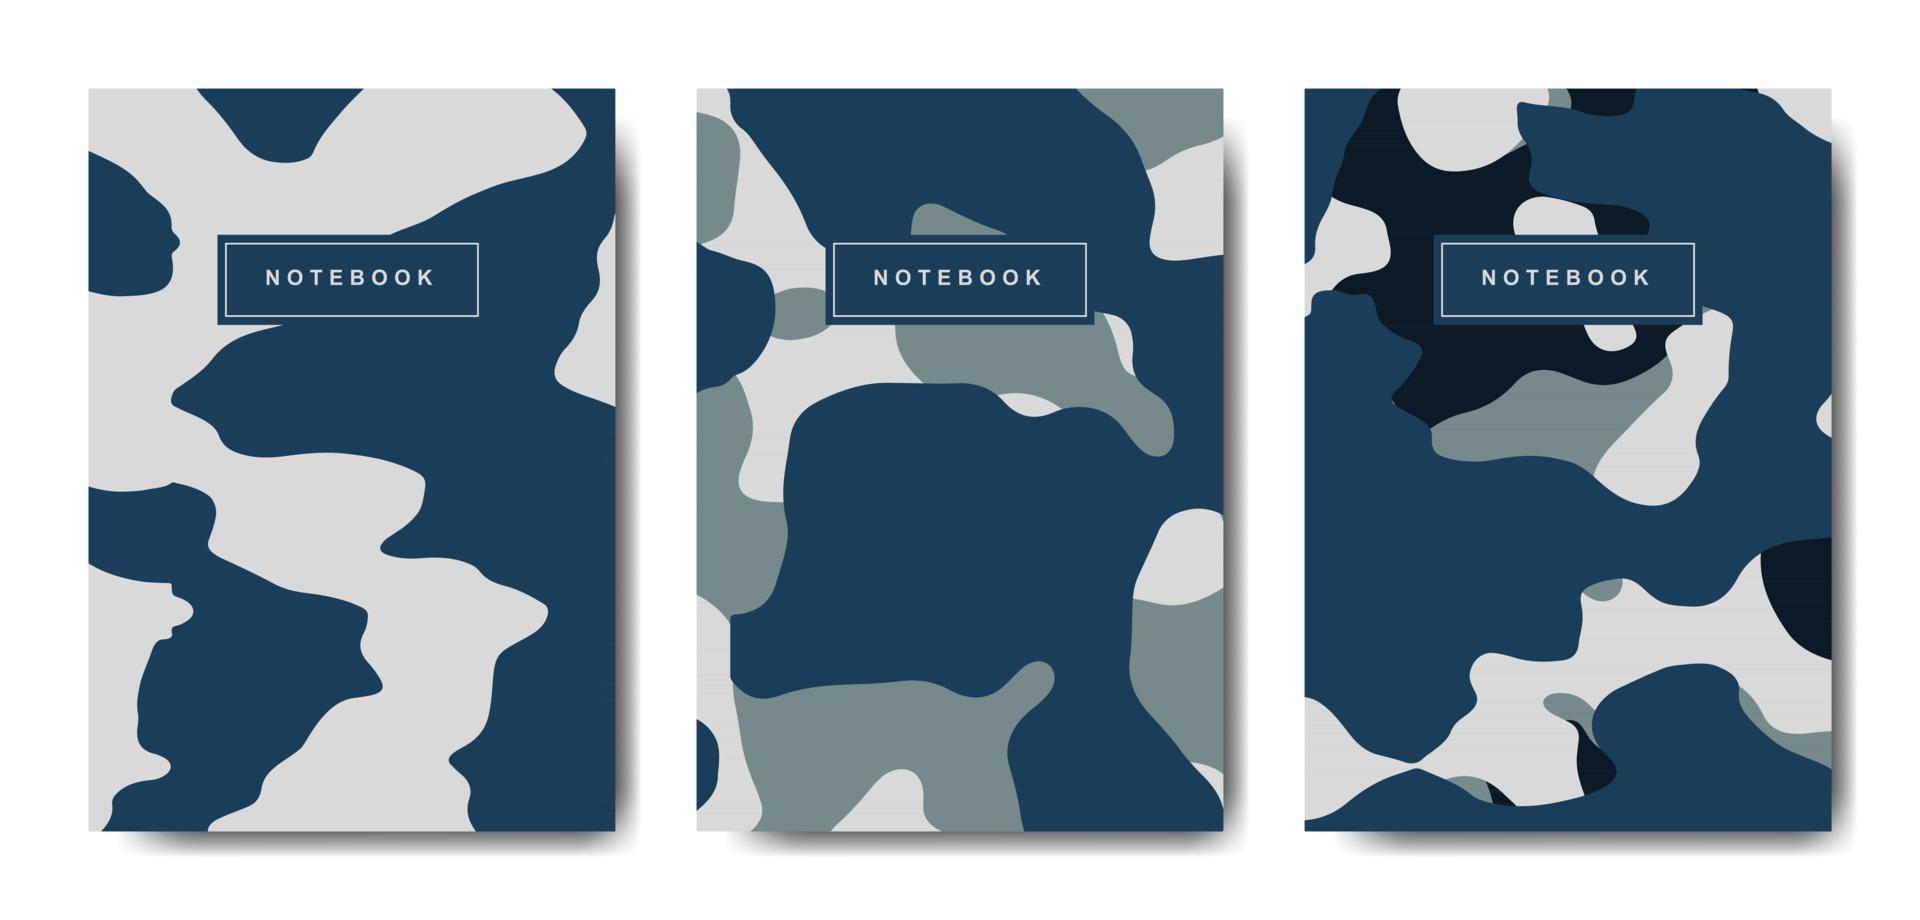 anteckningsbok för militär- och armékamouflage abstrakt omslag vektor